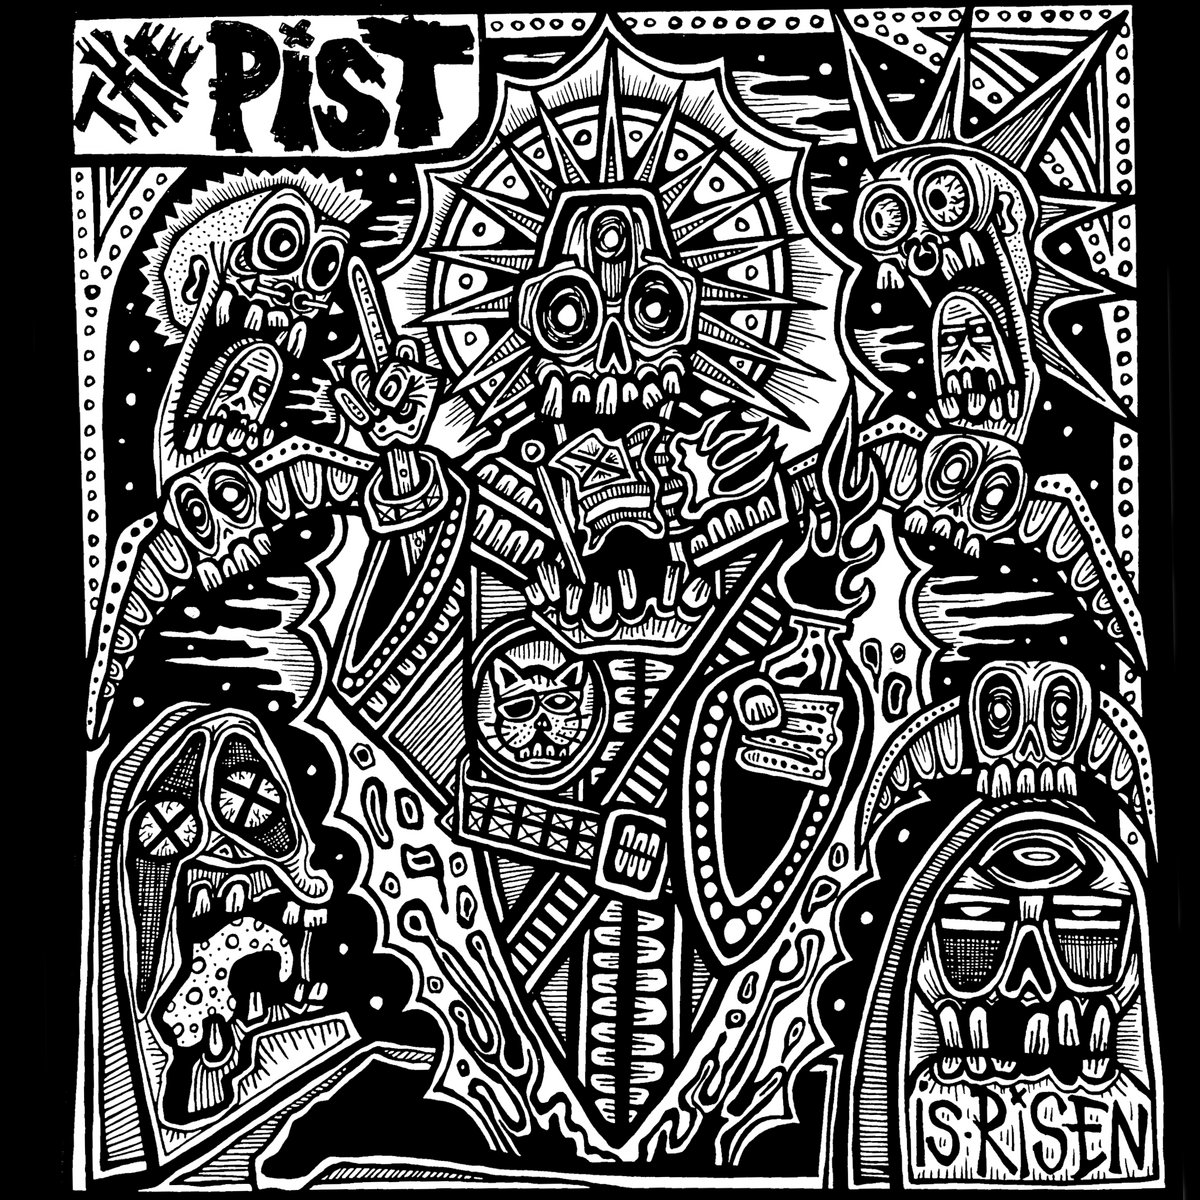 Review – The Pist “Is Risen” LP